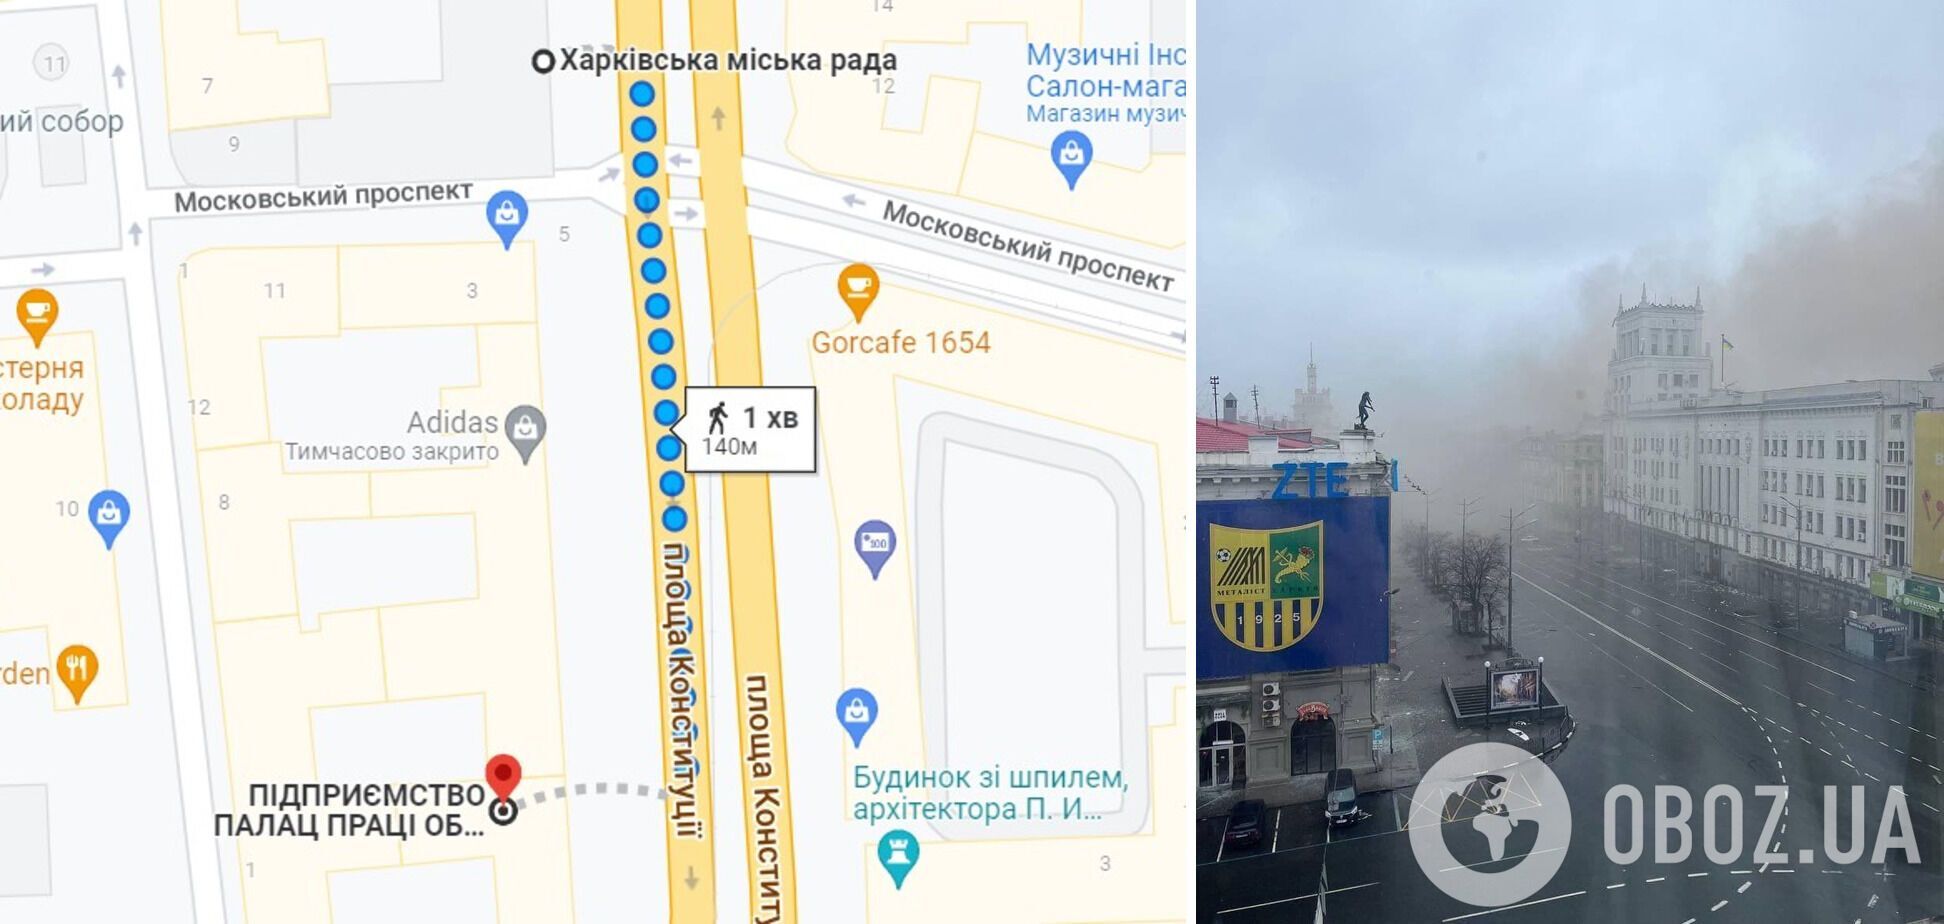 Удар військ РФ припав на Палац праці й будівлю міськради у Харкові